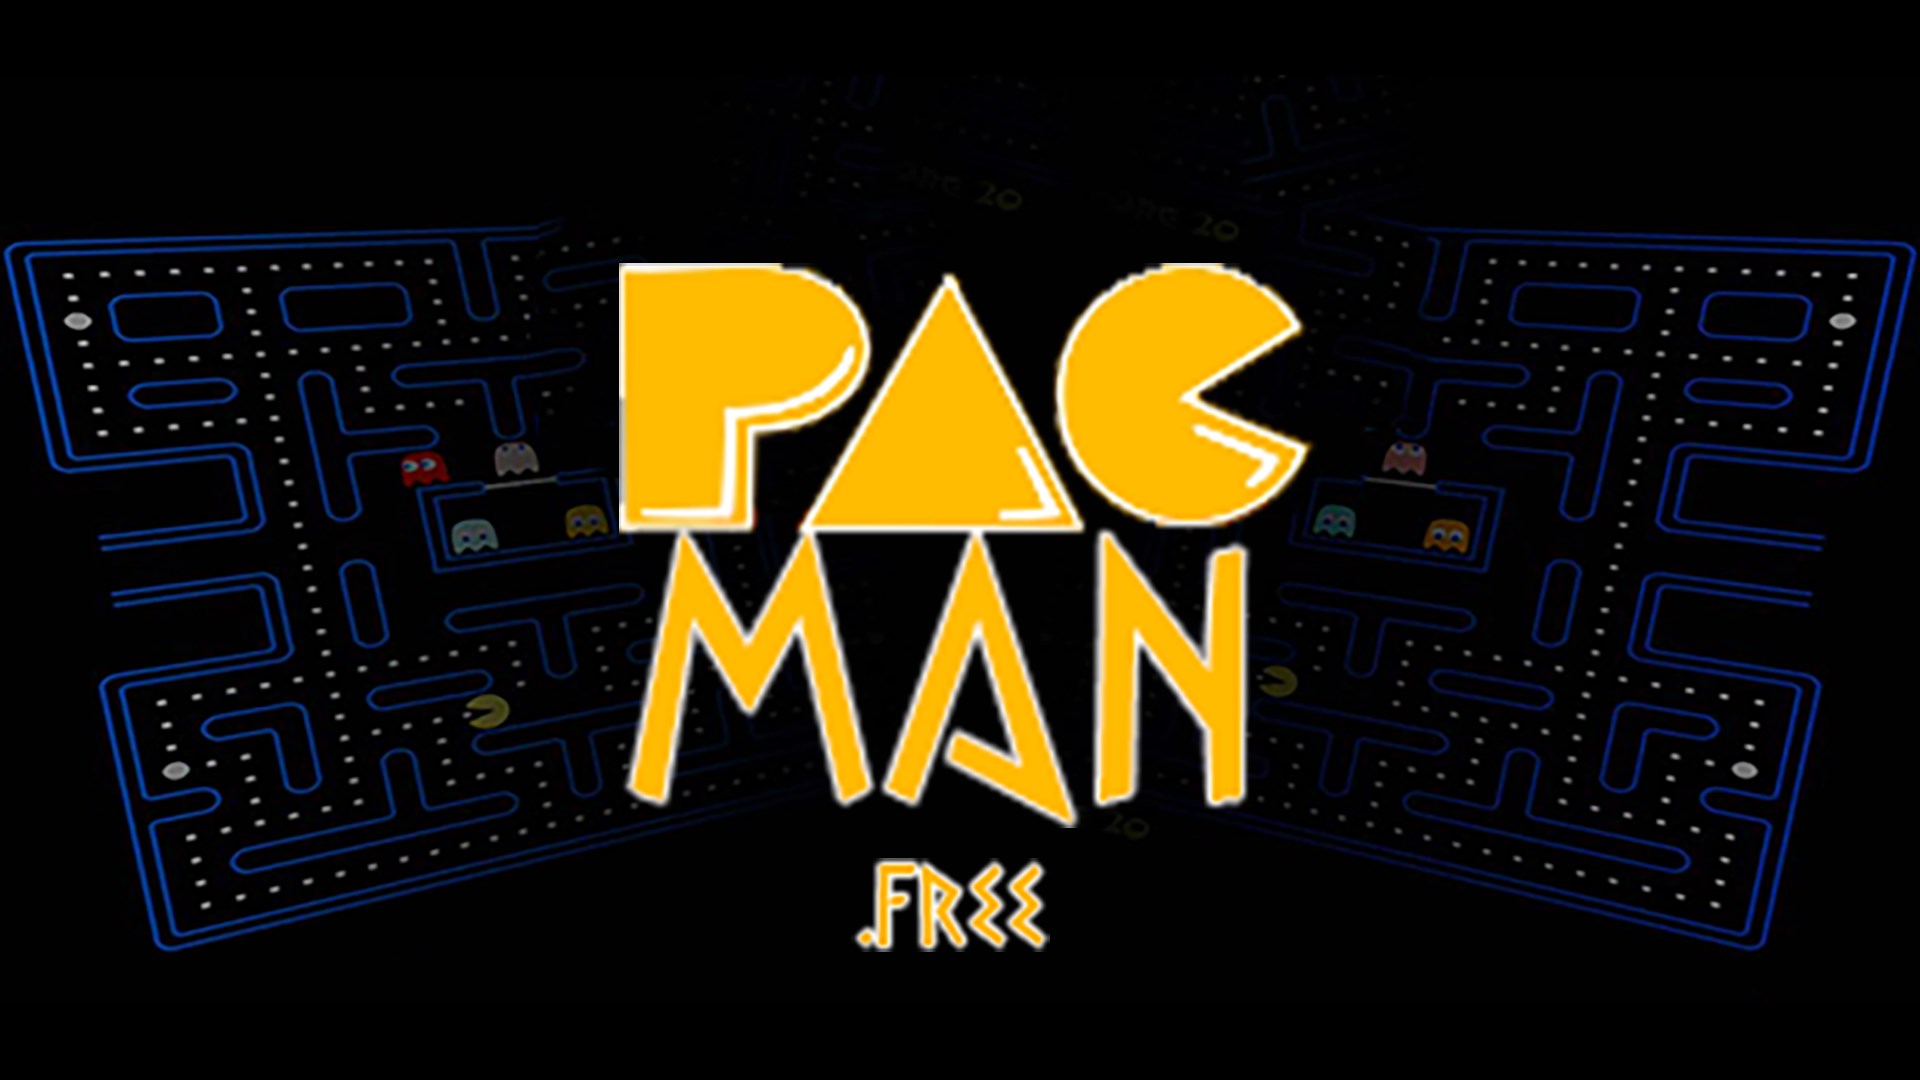 MS. PAC-MAN jogo online gratuito em